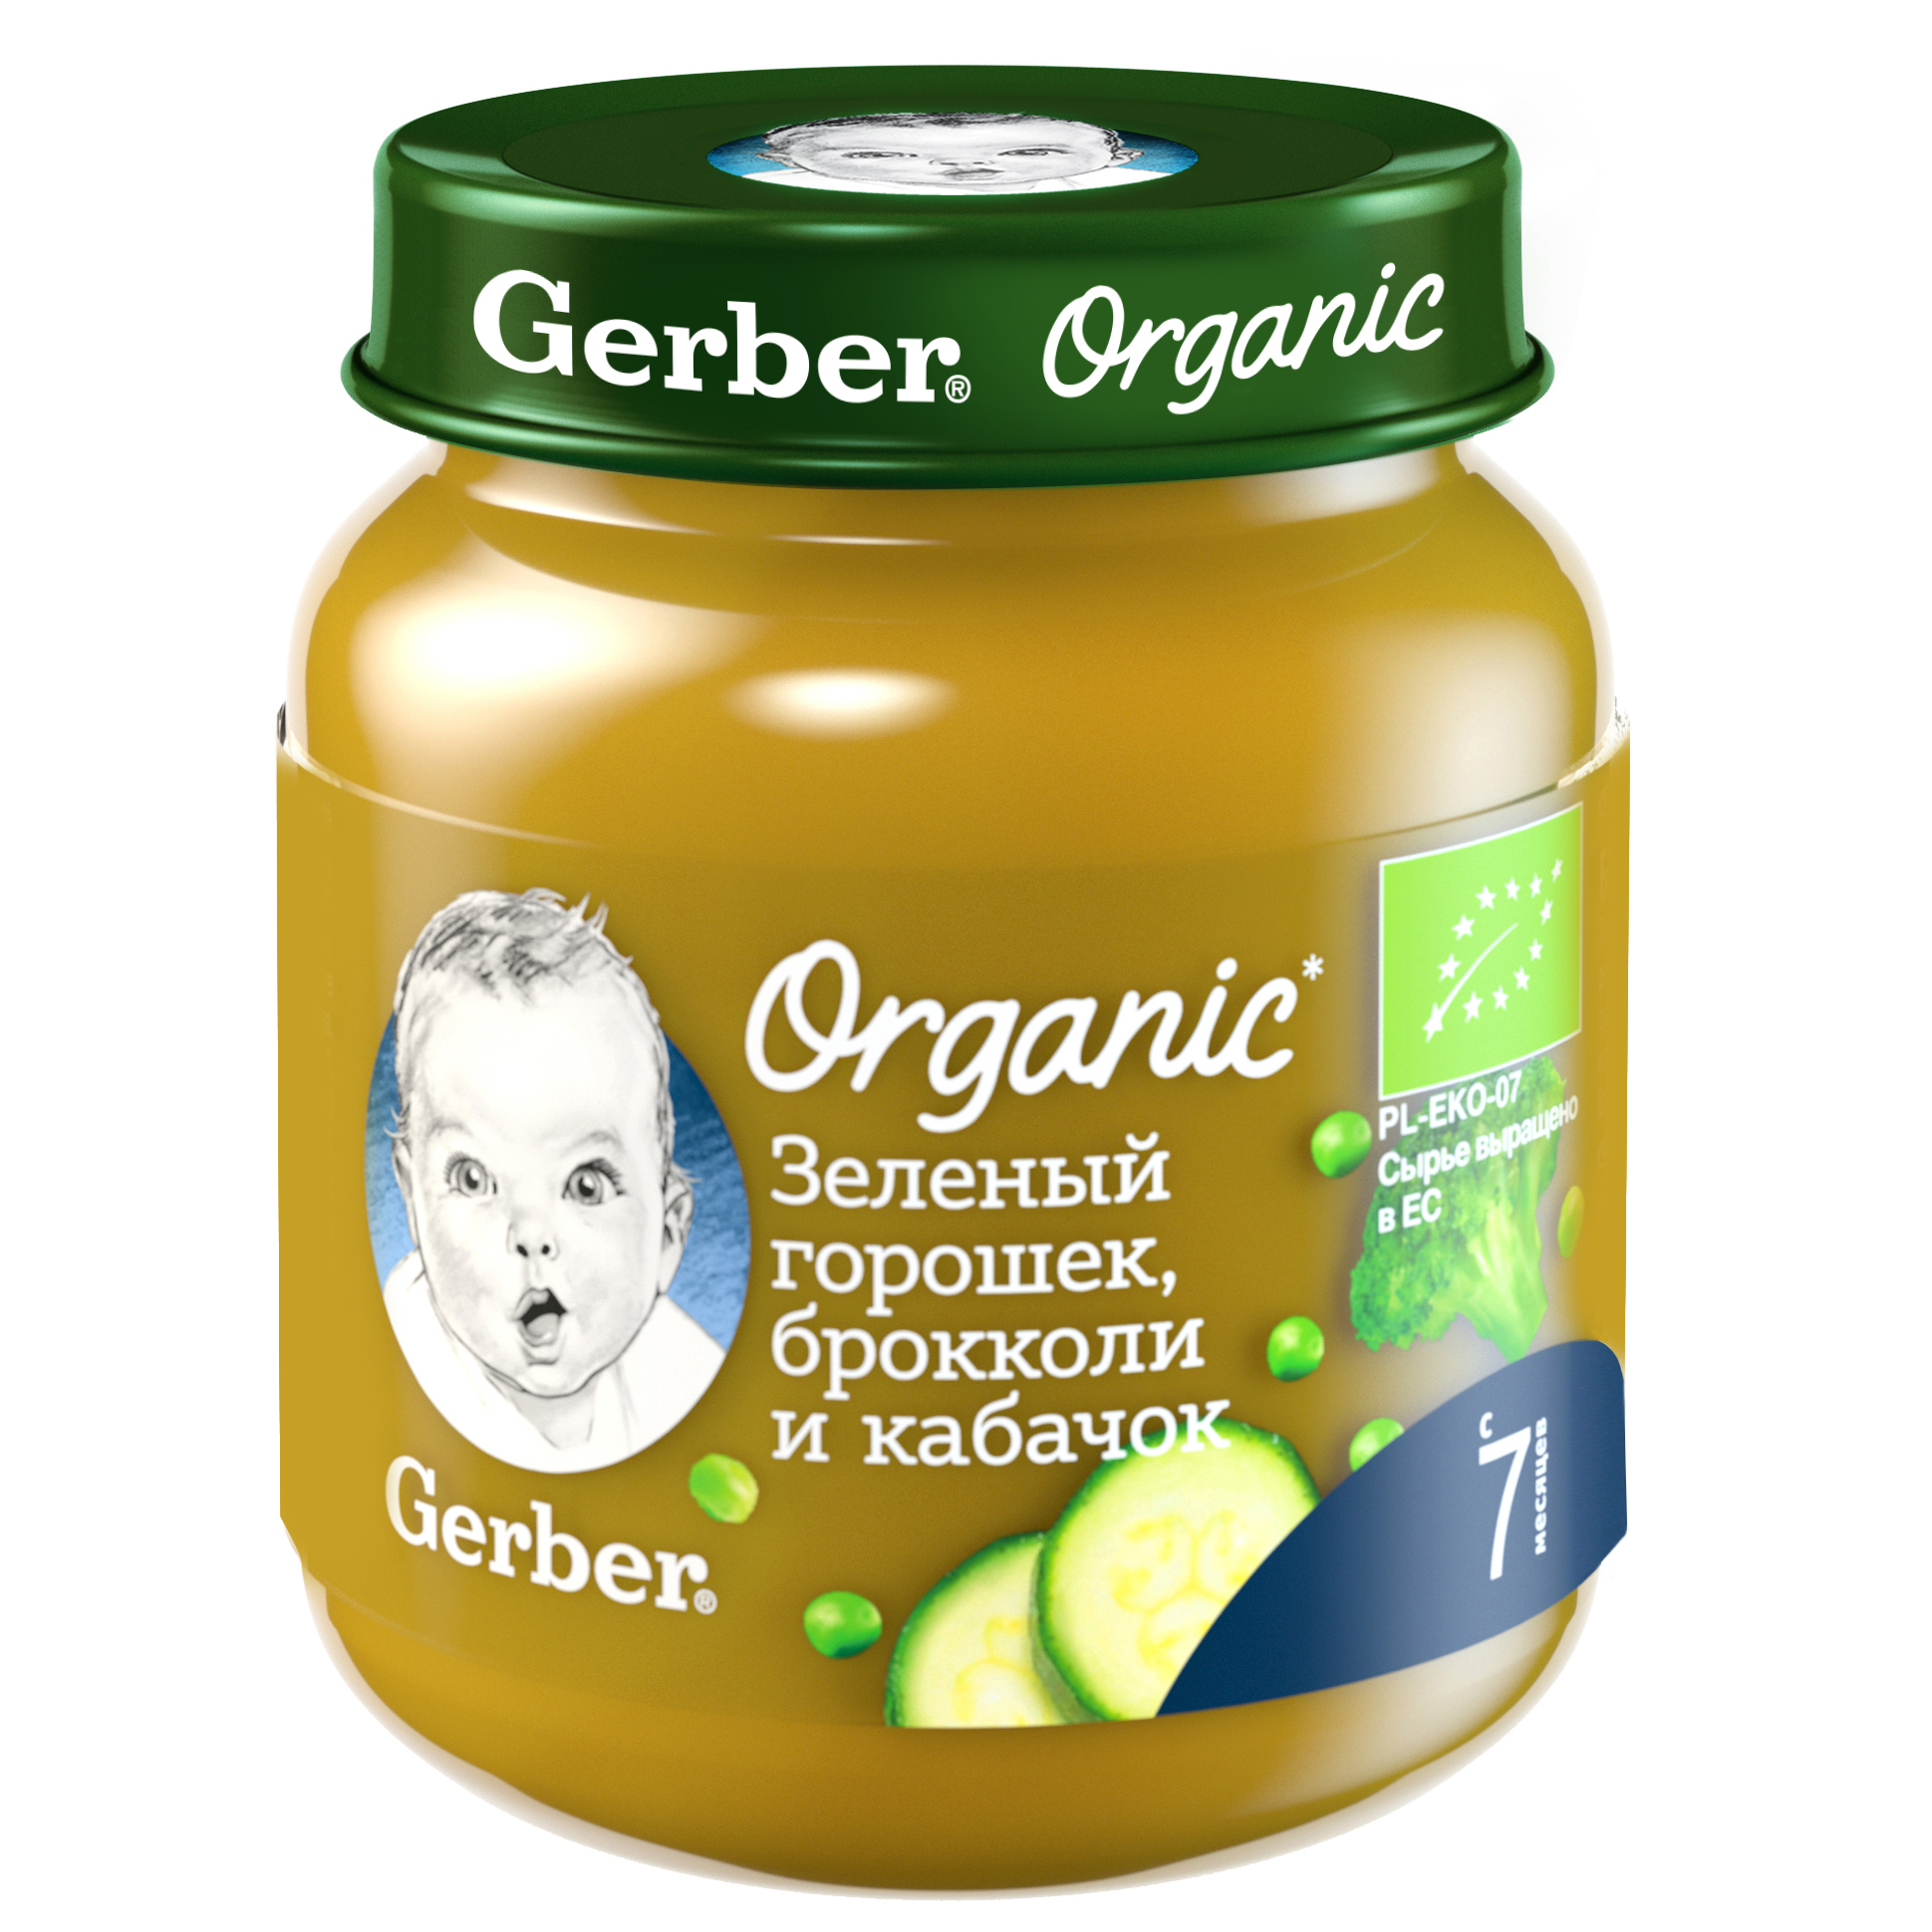 Gerber Organic Зеленый горошек, брокколи и кабачок 125г овощное органическое пюре (Гербер)